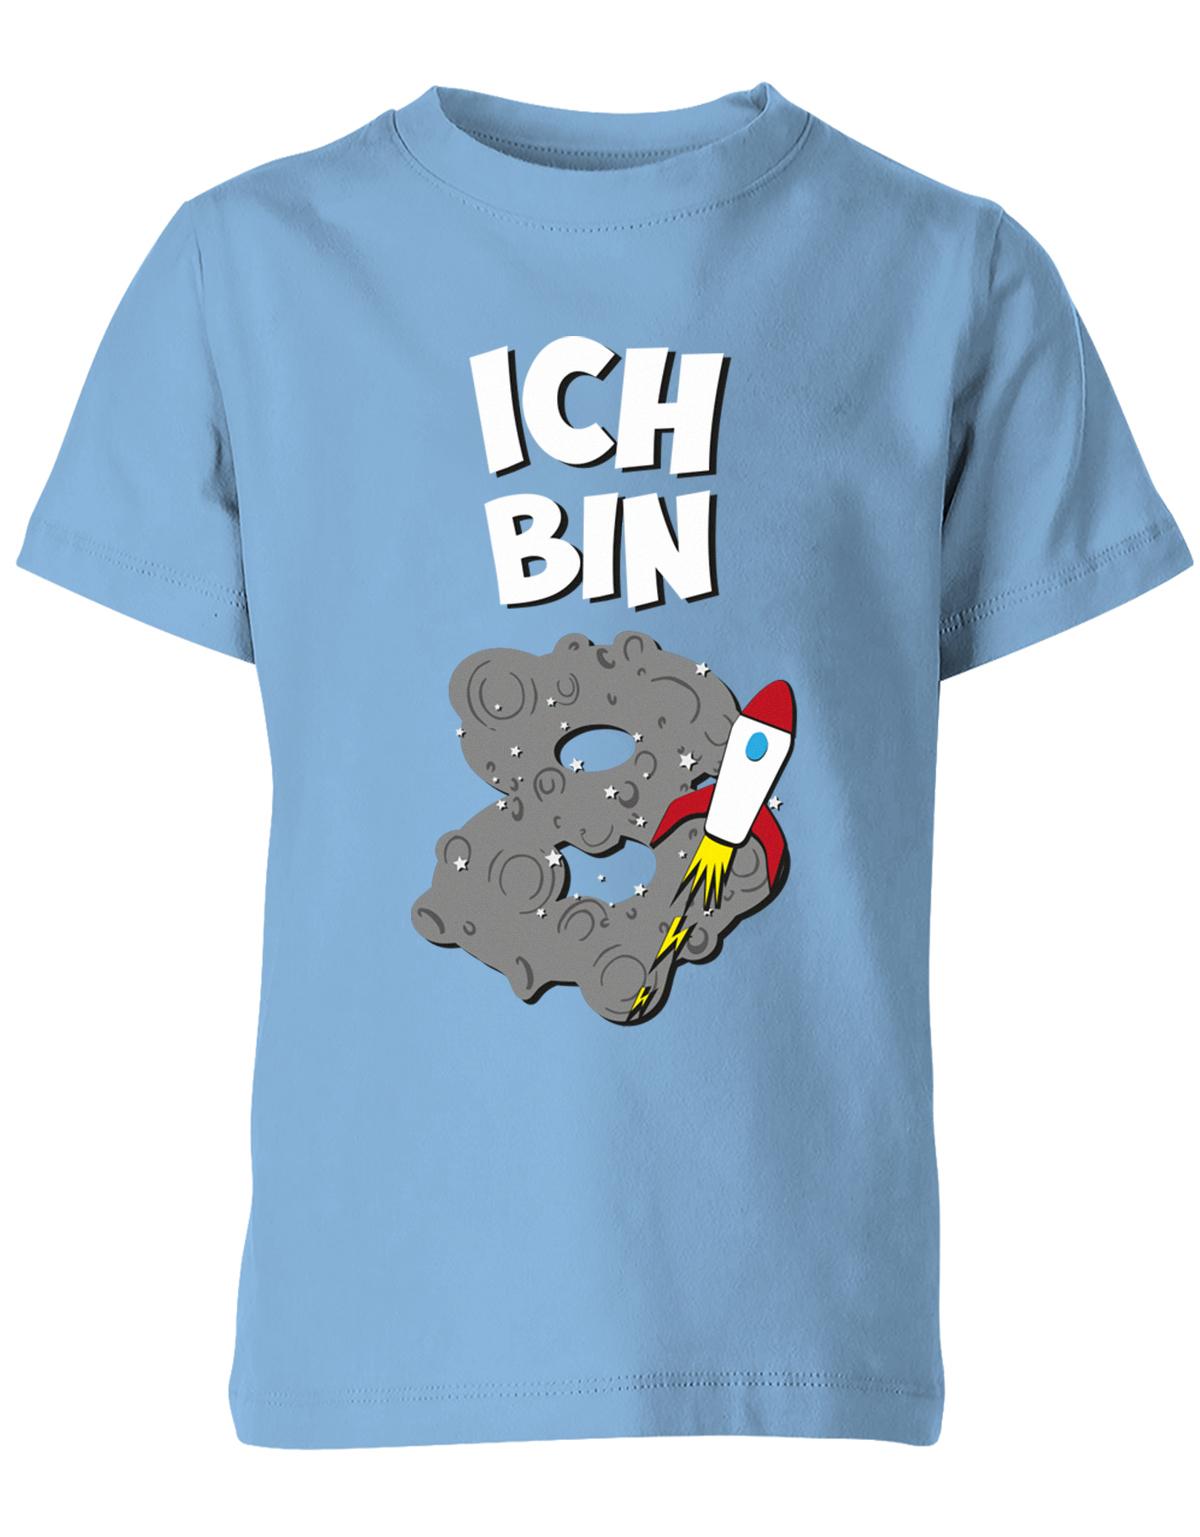 ich-bin-8-weltraum-rakete-planet-geburtstag-kinder-shirt-hellblau